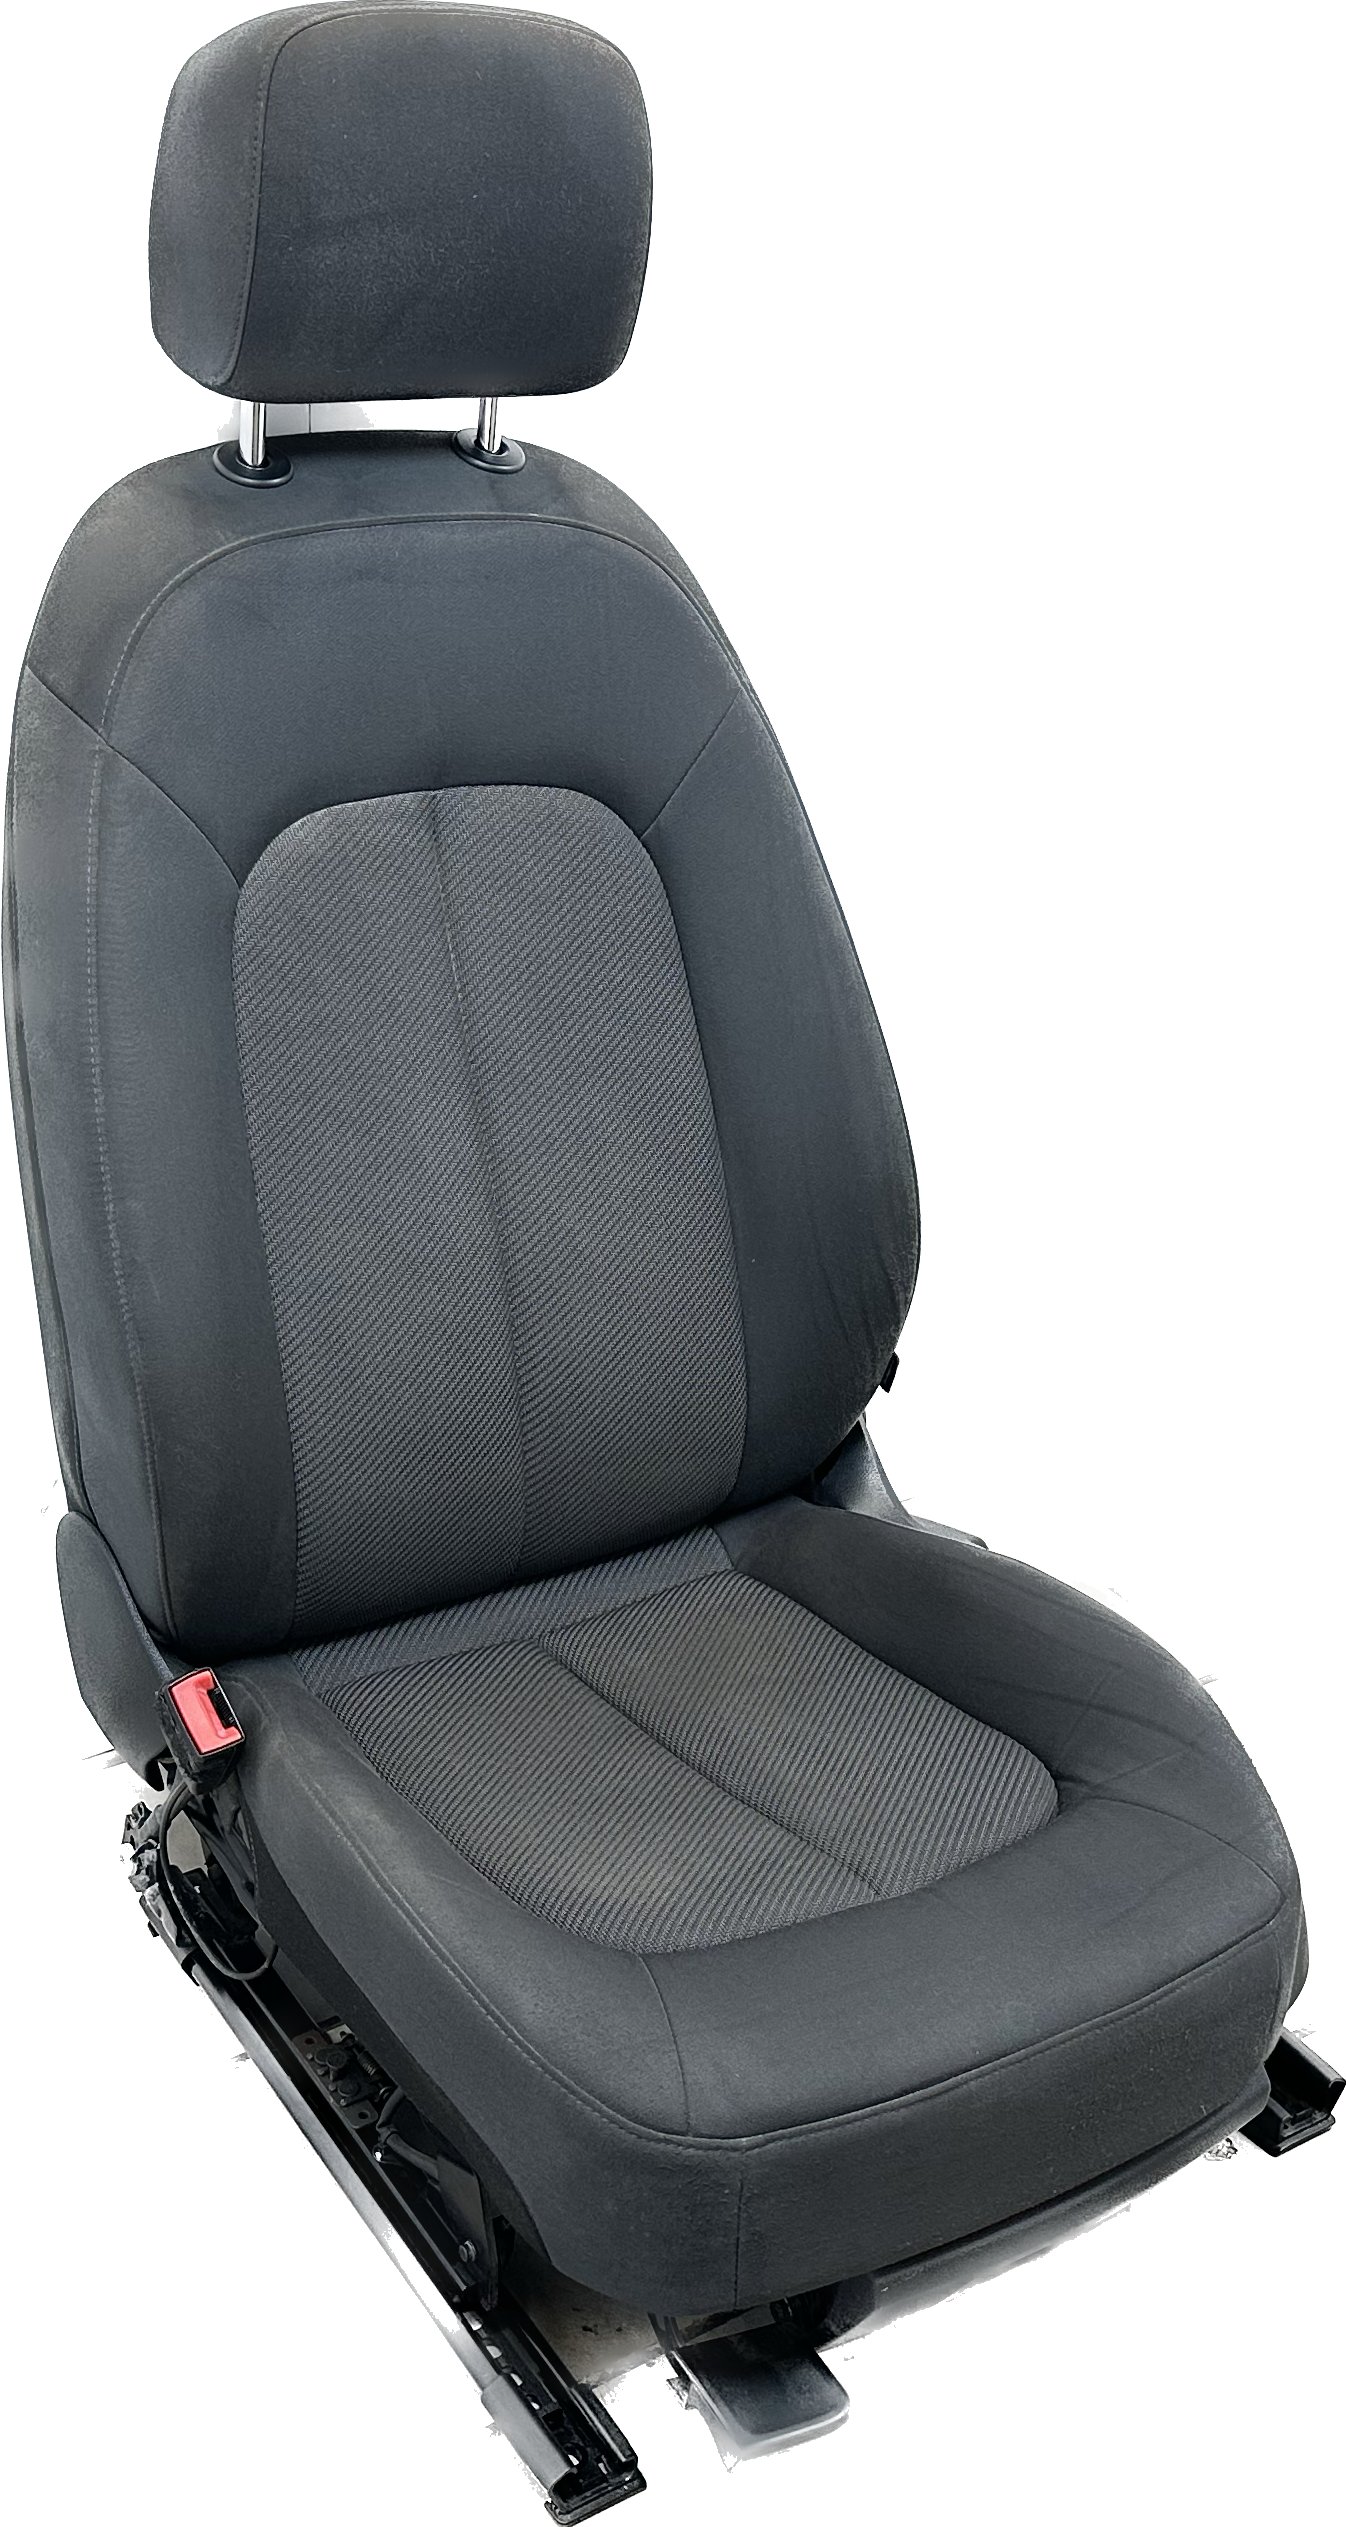 Sitz vorne links Fahrersitz Sitzheizung Stoff Audi A6 4G soul schwarz  N2M/FZ, Sitze, Rückbänke, Innenraum und Einrichtung